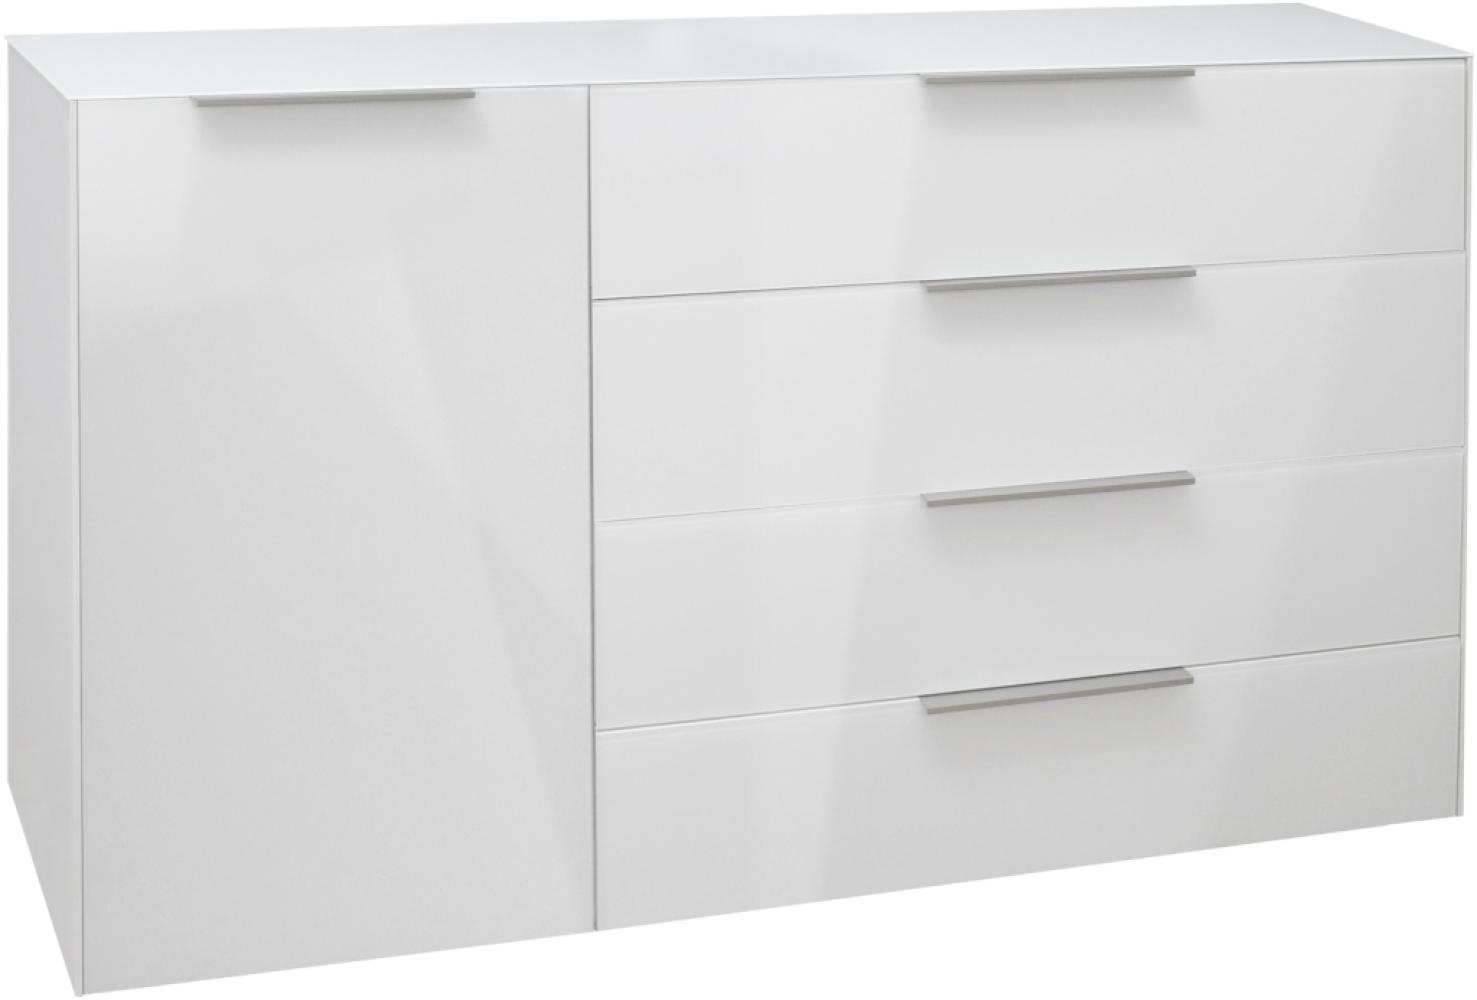 Sideboard 'MIX BOX' in Weiß matt/ Glas, ca. 177x97x45cm Bild 1